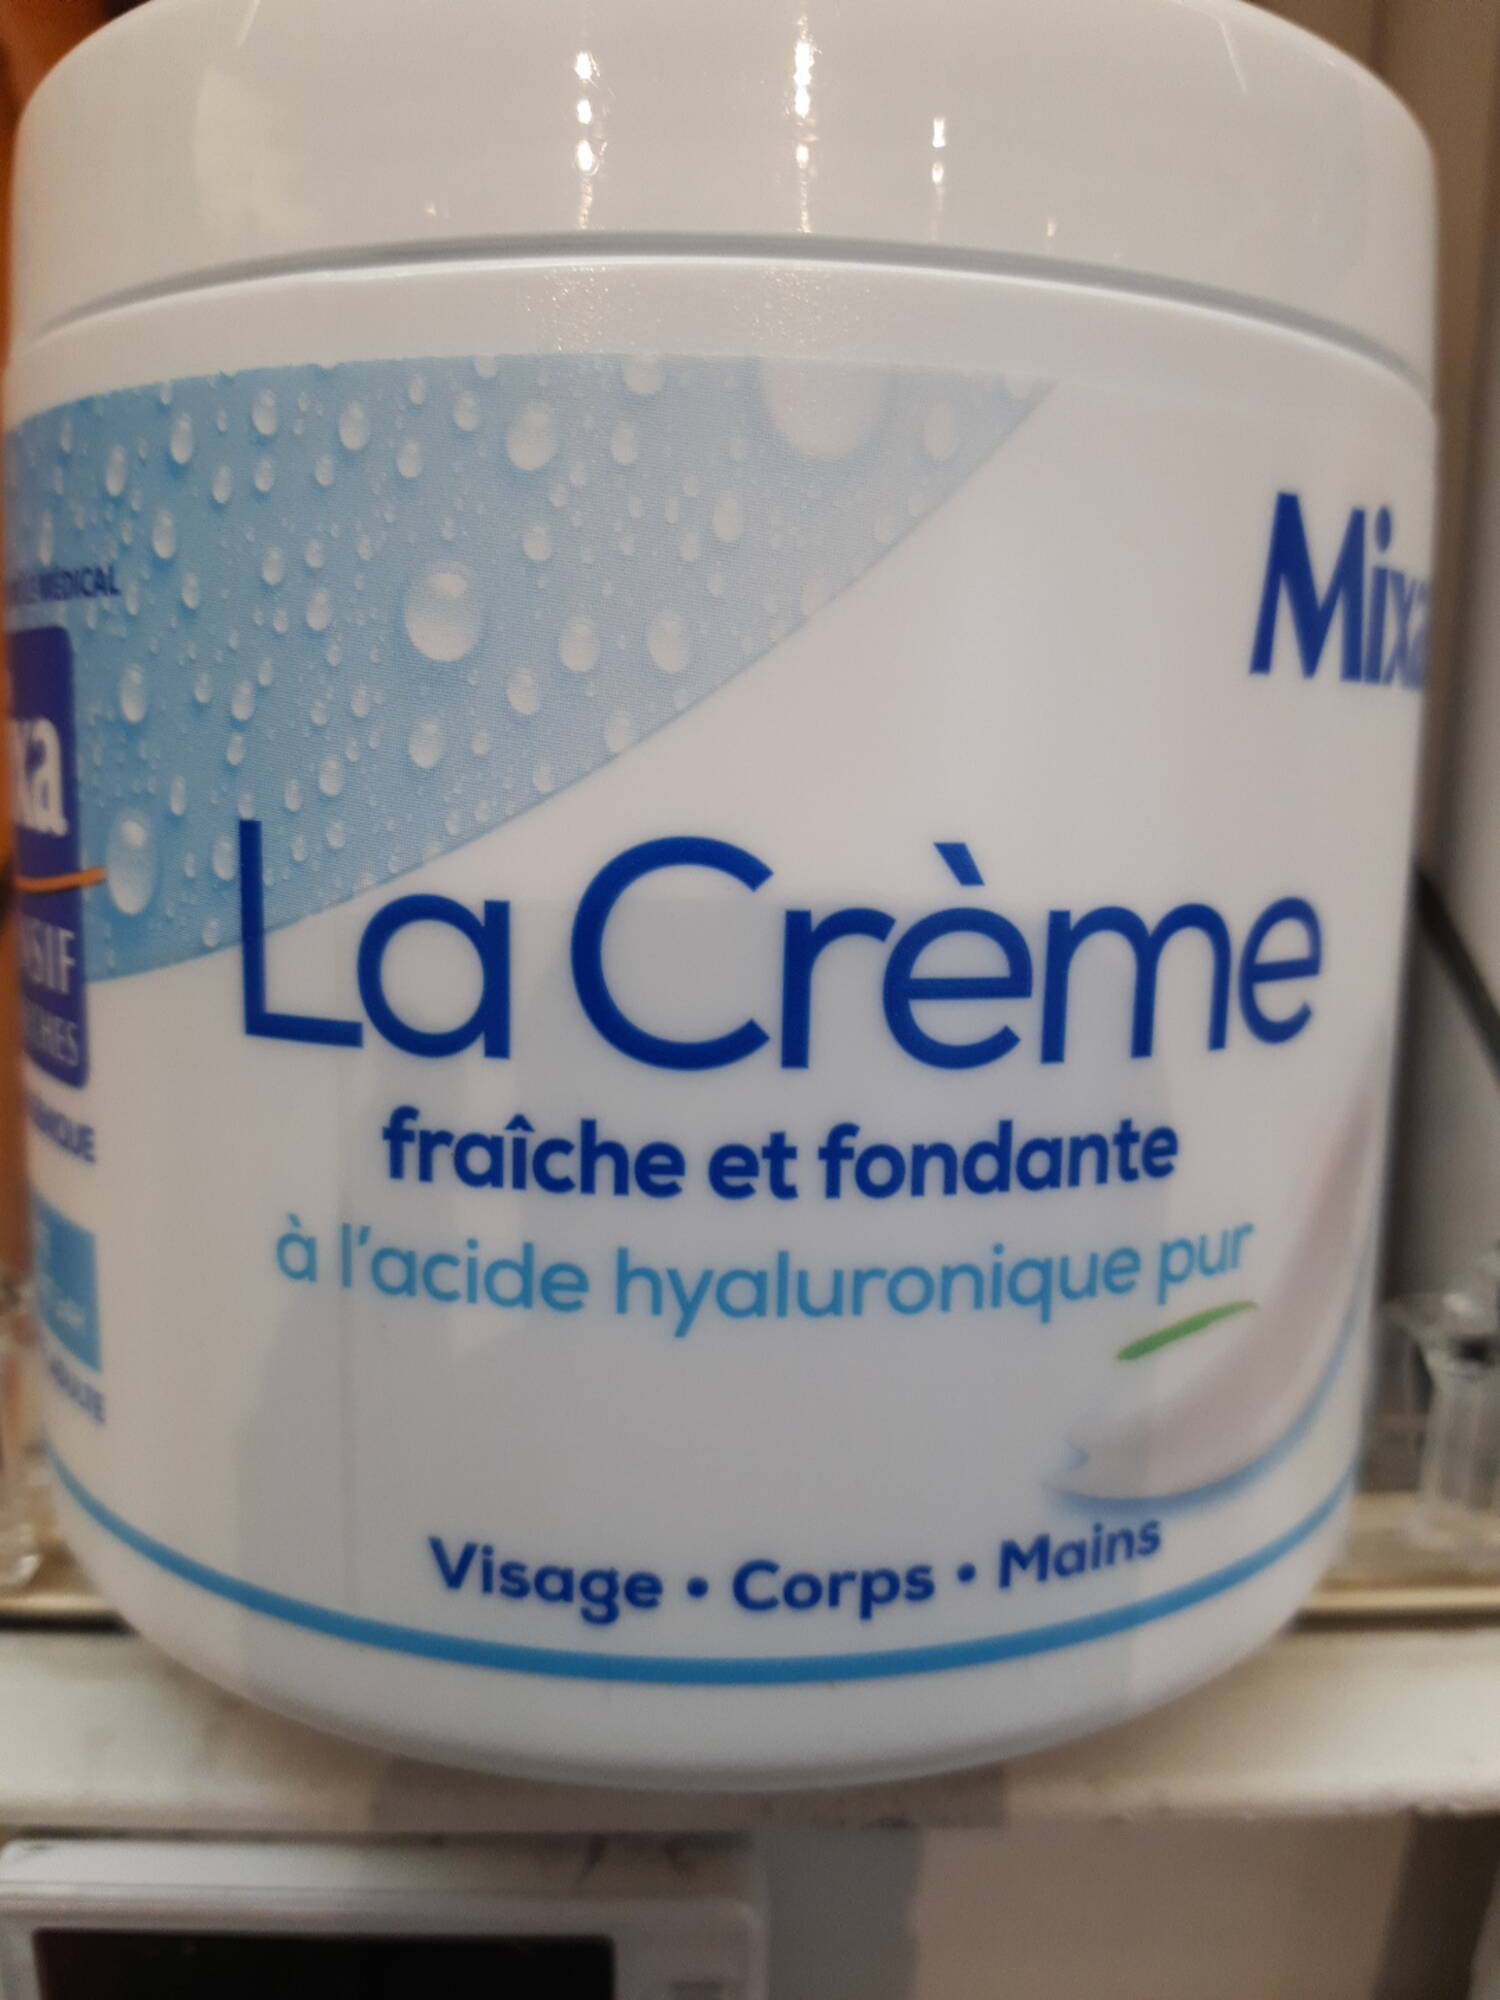 MIXA - La Crème fraîche et fondante